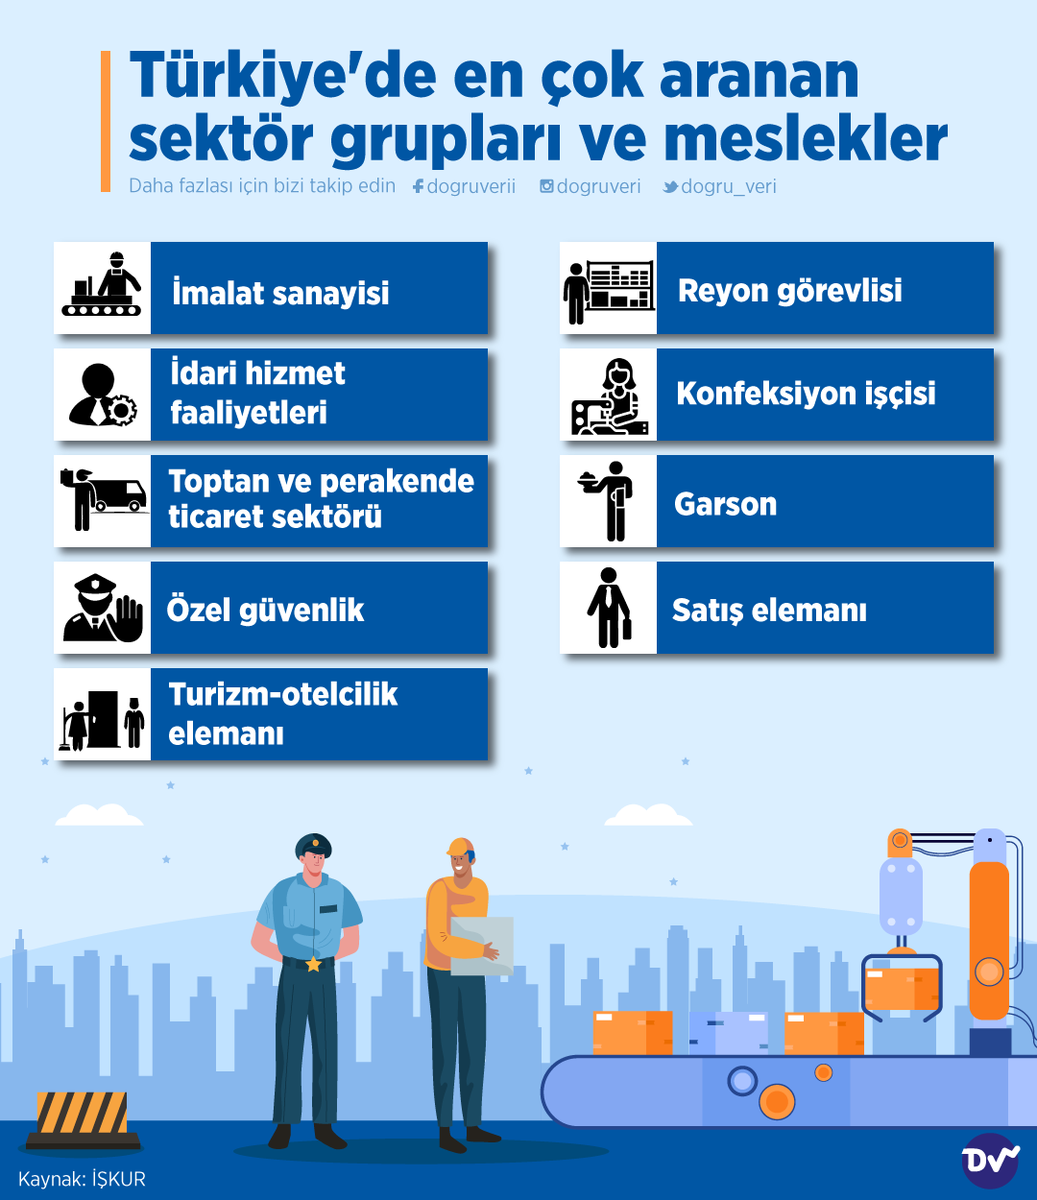 💼 Türkiye'de en çok hangi sektör için eleman aranıyor? İŞKUR verilerine göre işverenler en çok imalat, idari hizmet, güvenlik, konfeksiyon gibi alanlarda işçi arıyor.